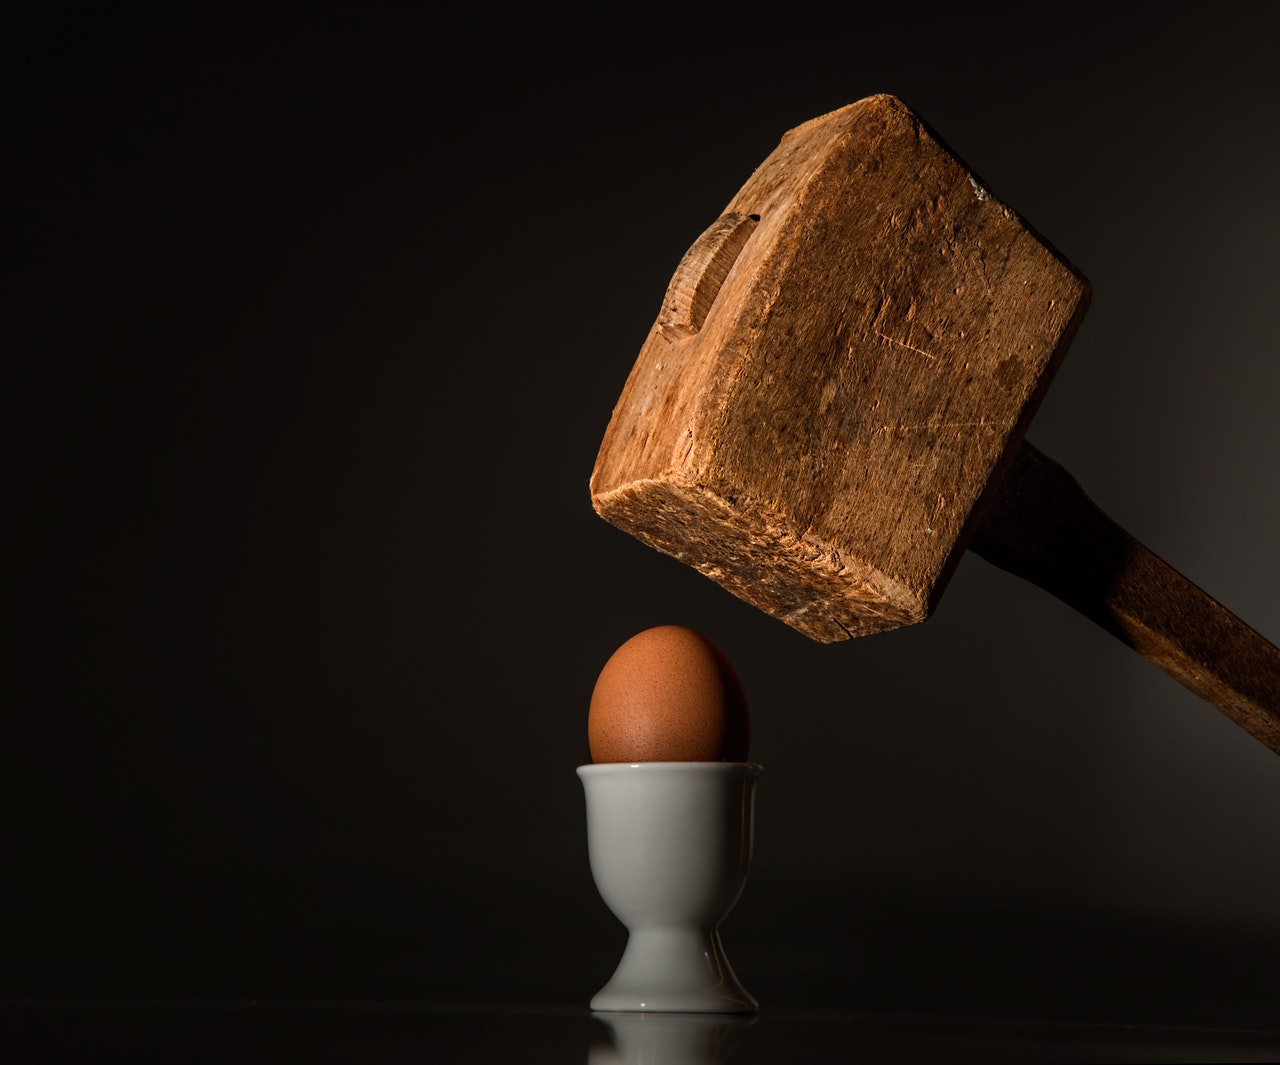 images/news/2017/egg-hammer